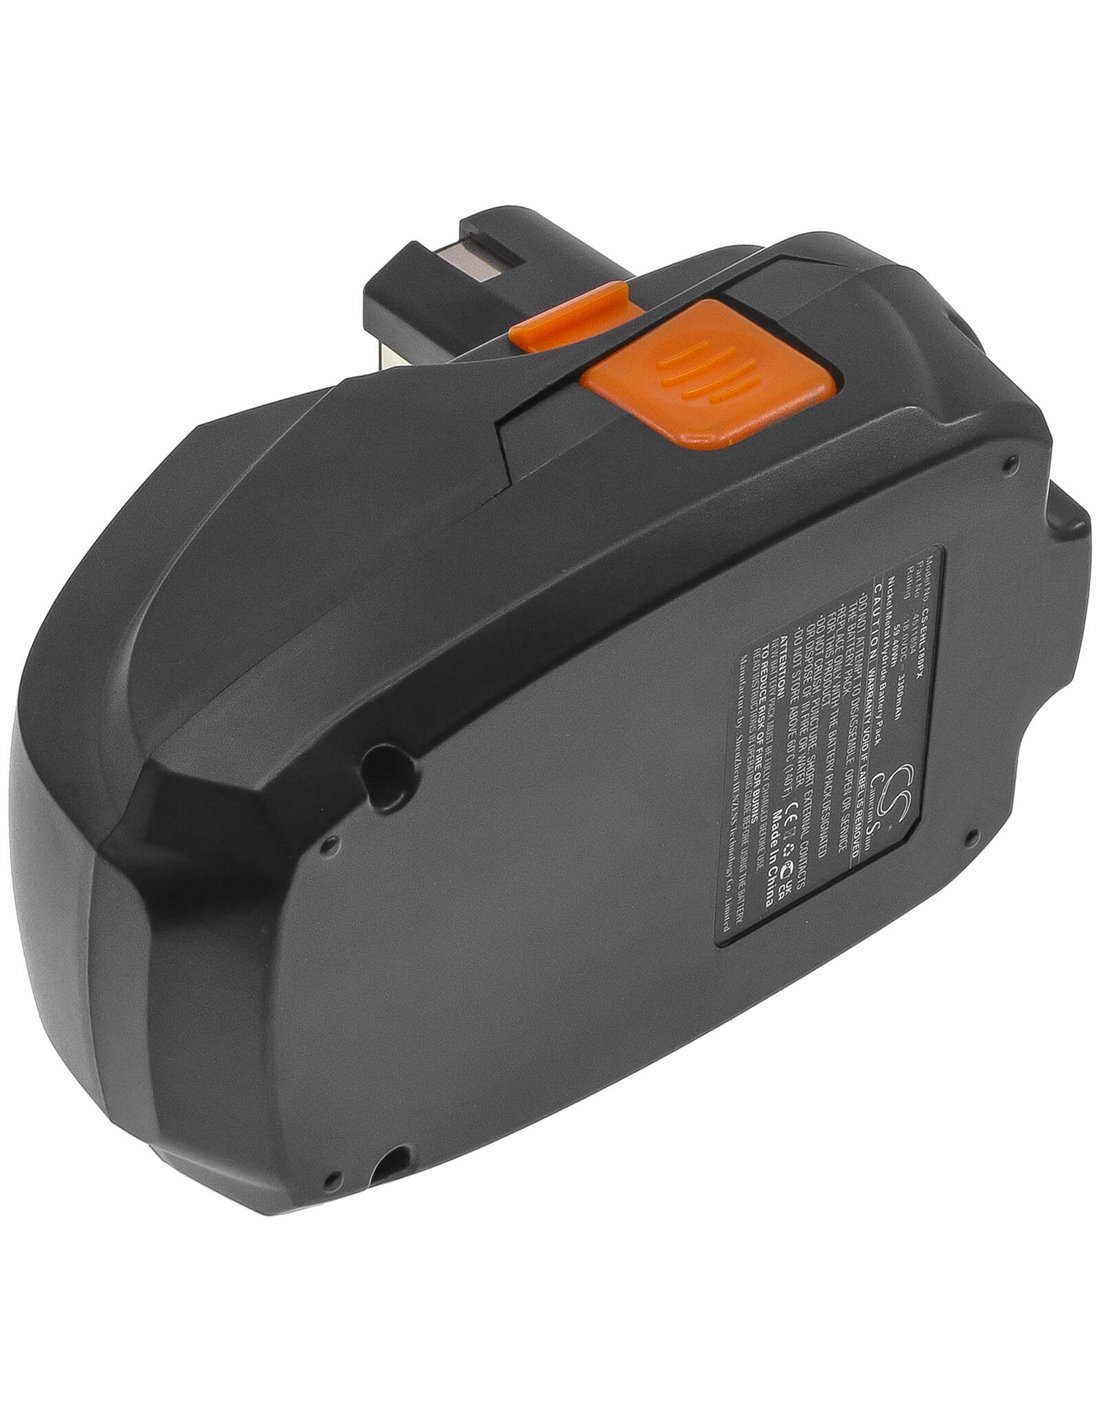 Battery for Einhell Rt-cd18i, Rt-cd18i Hammer Drill, 18V, 3300mAh - 59.40Wh